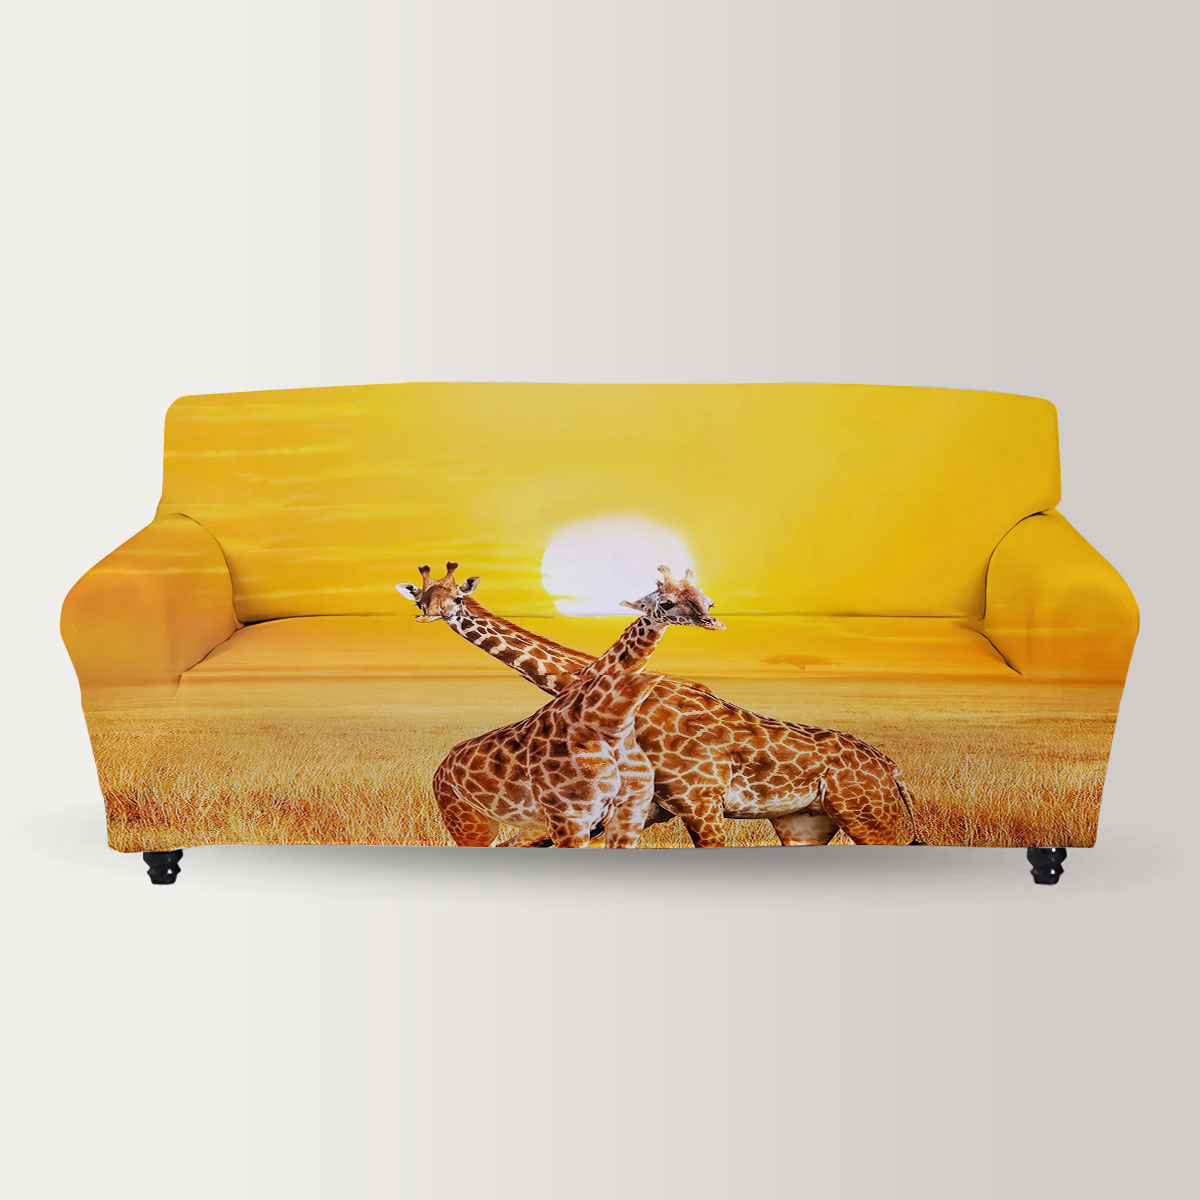 Giraffe Under The Sunset Sofa Cover_2_1